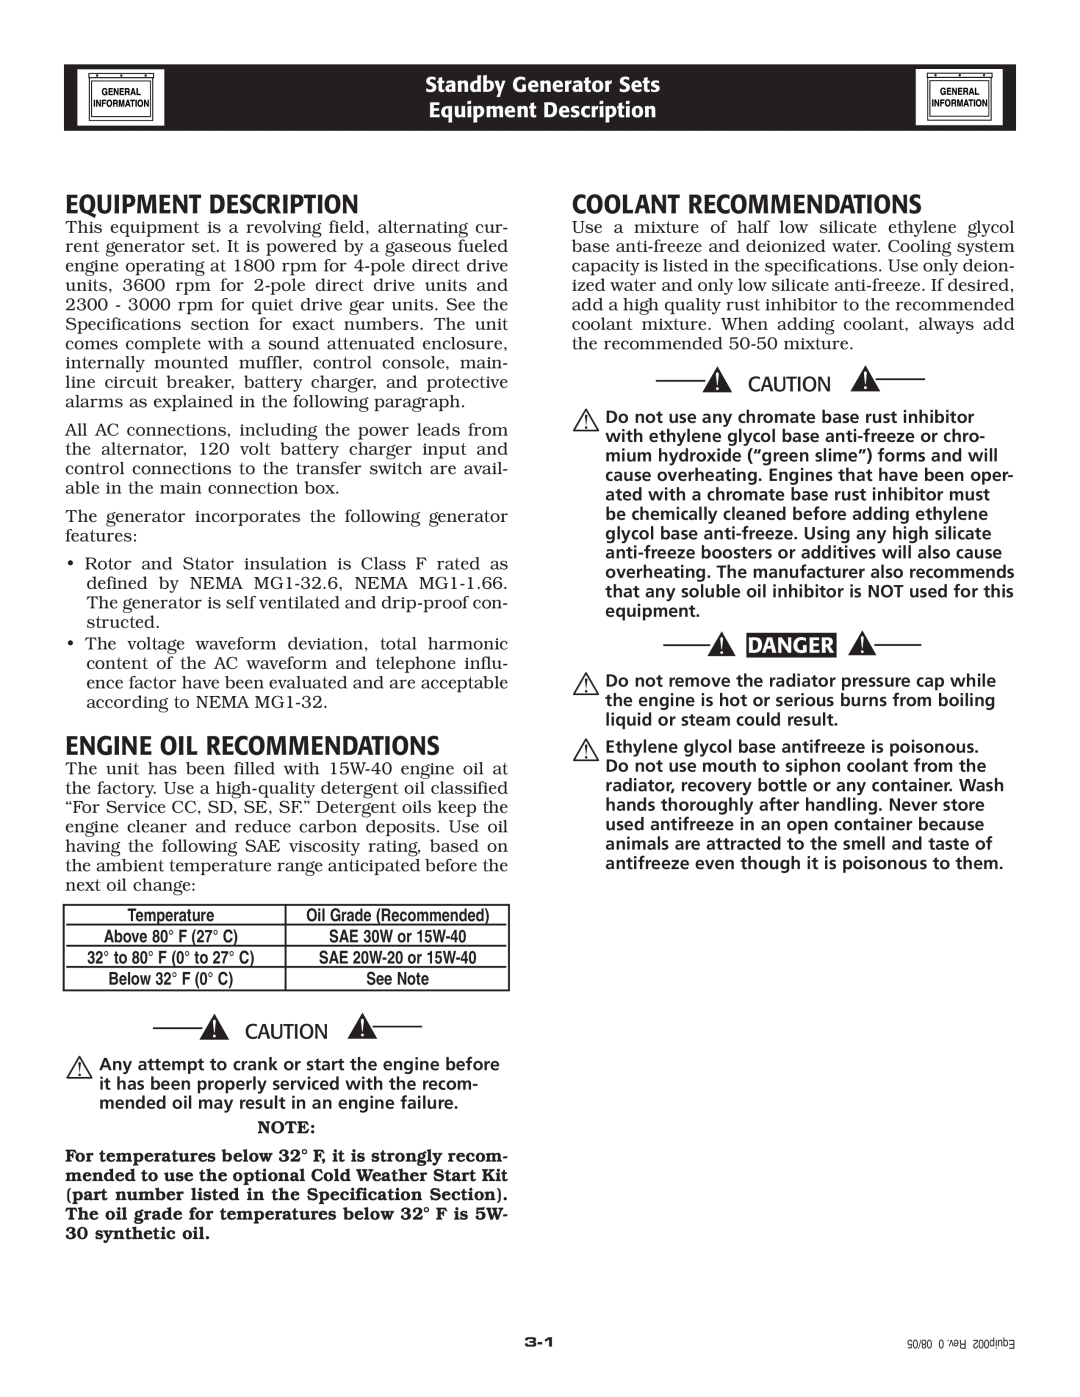 Generac Power Systems 005210-0 Equipment Description, Engine Oil Recommendations, Coolant Recommendations, Danger 